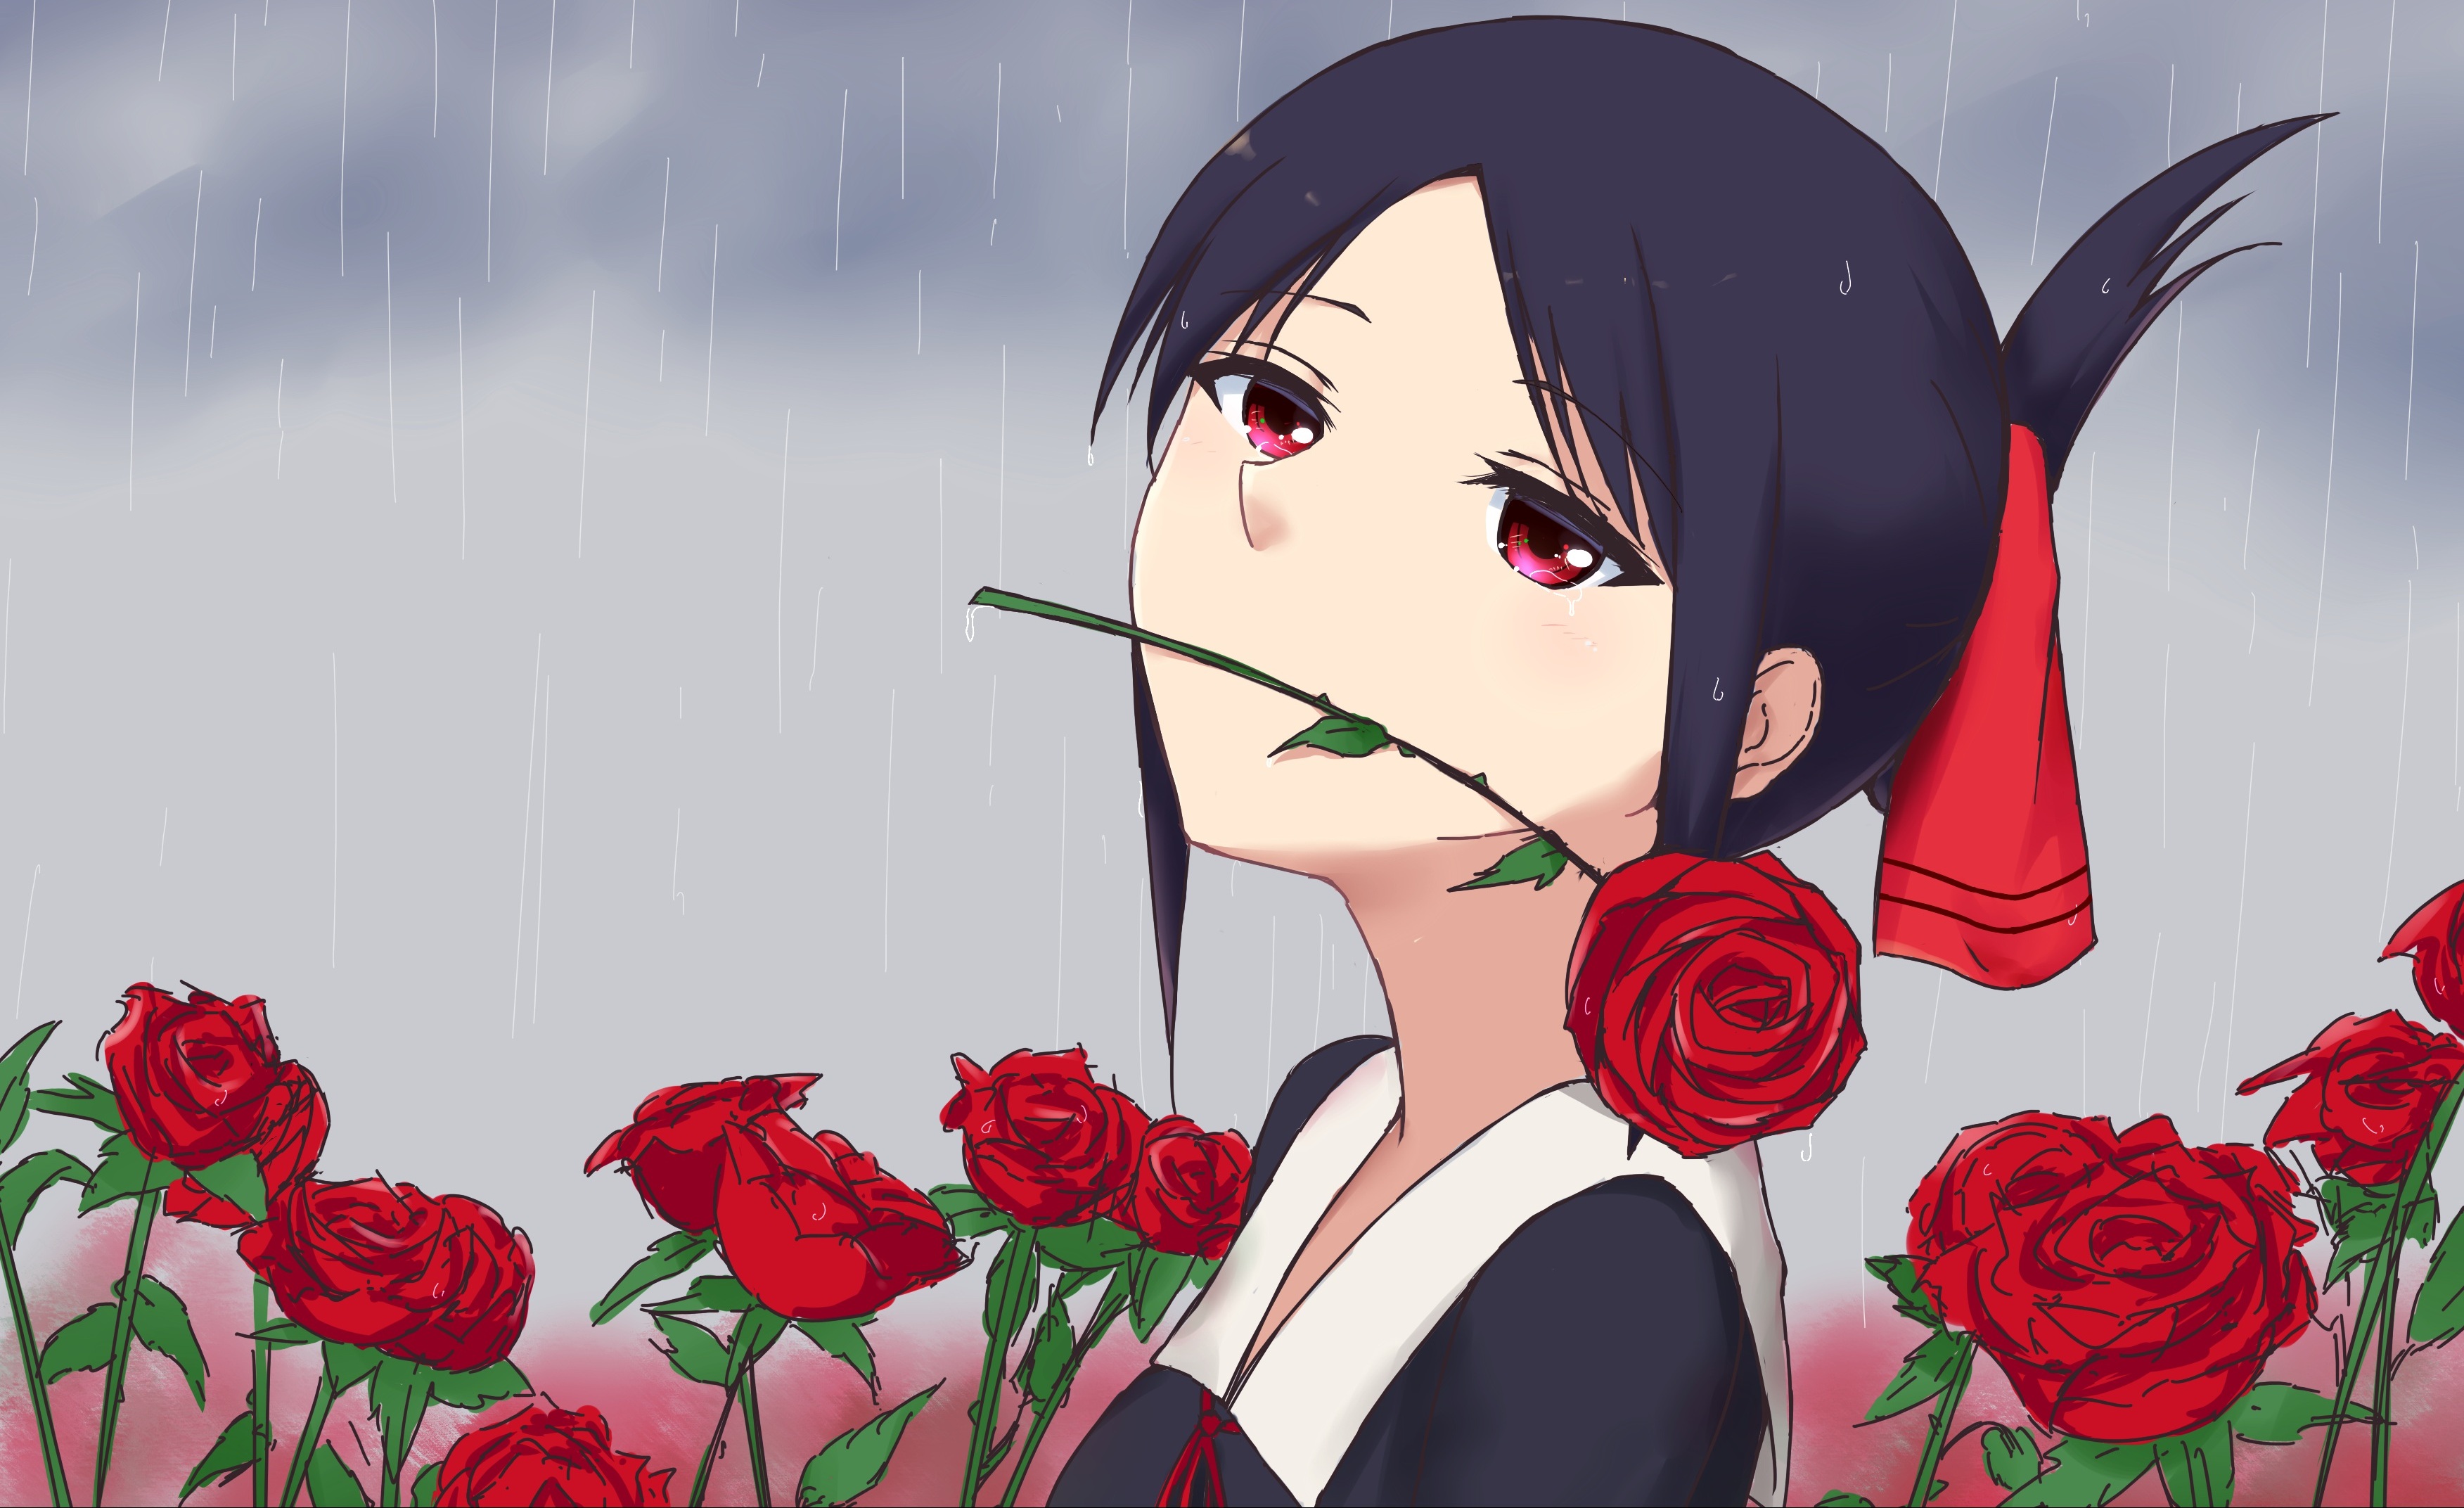 Free download wallpaper Anime, Rose, Kaguya Sama: Love Is War, Kaguya Shinomiya on your PC desktop